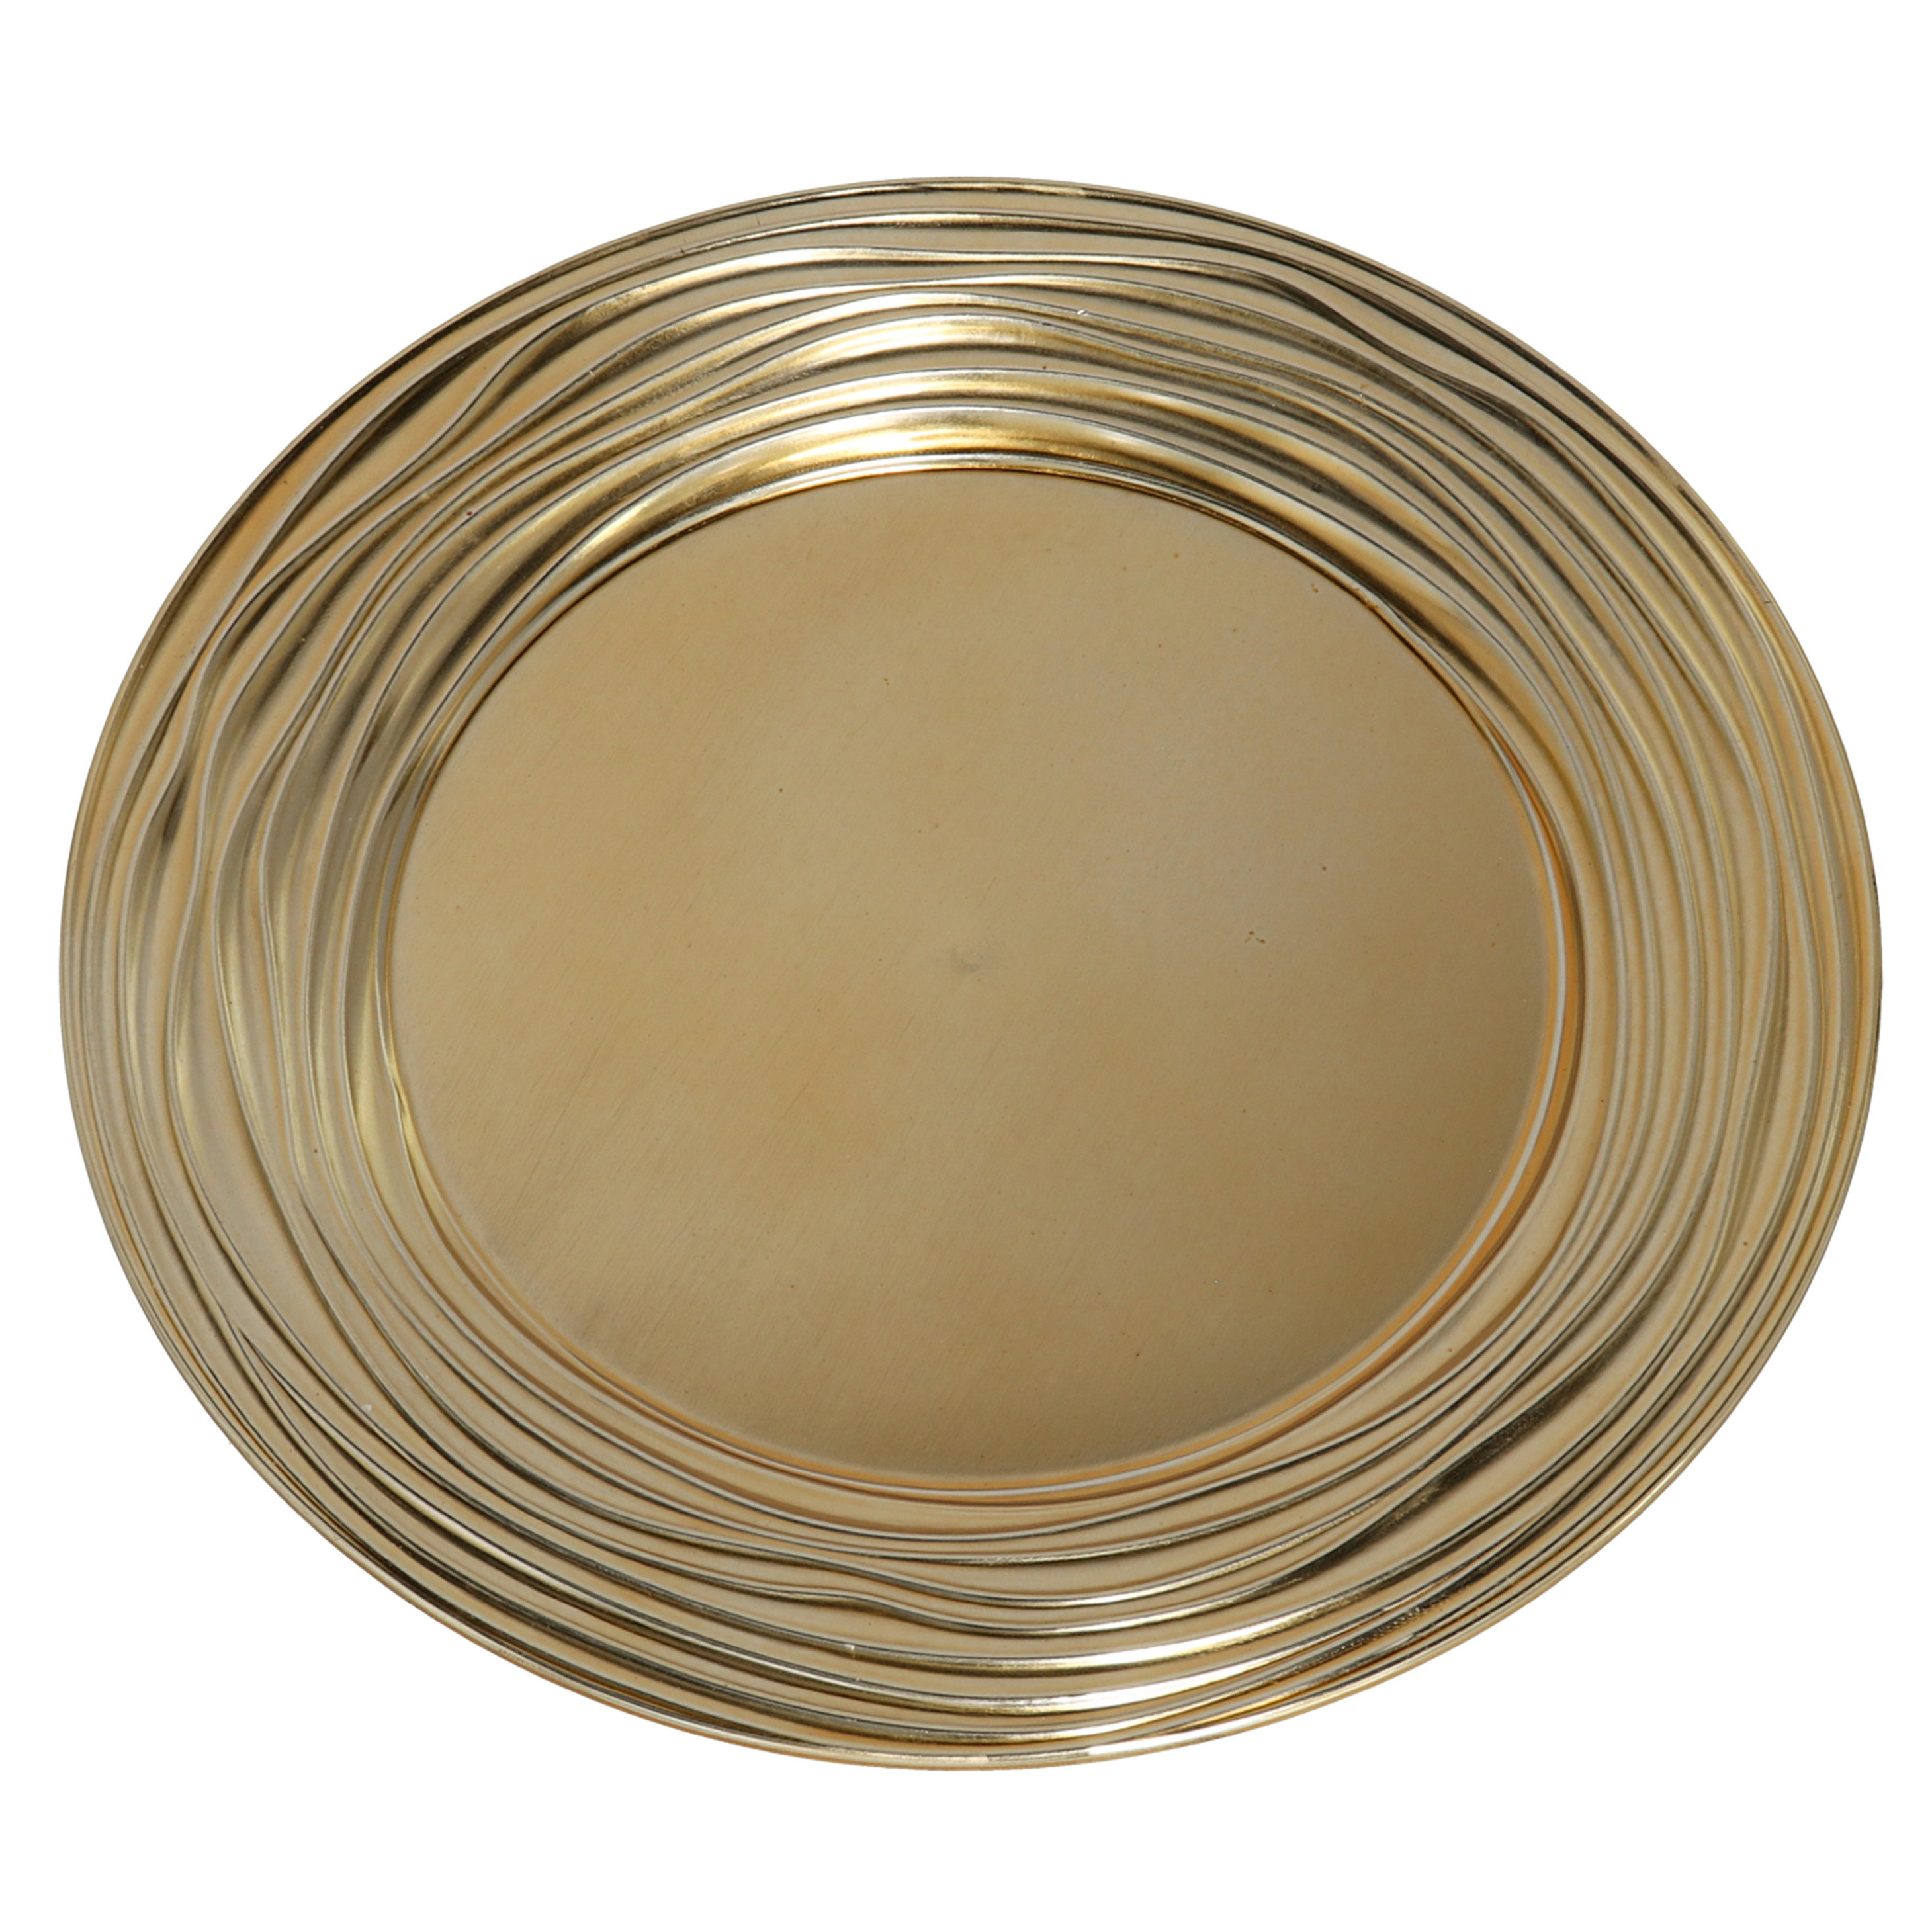 Gerimport Ronde diner onderborden/kaarsenbord/plateau glimmend goud van 33 cm -